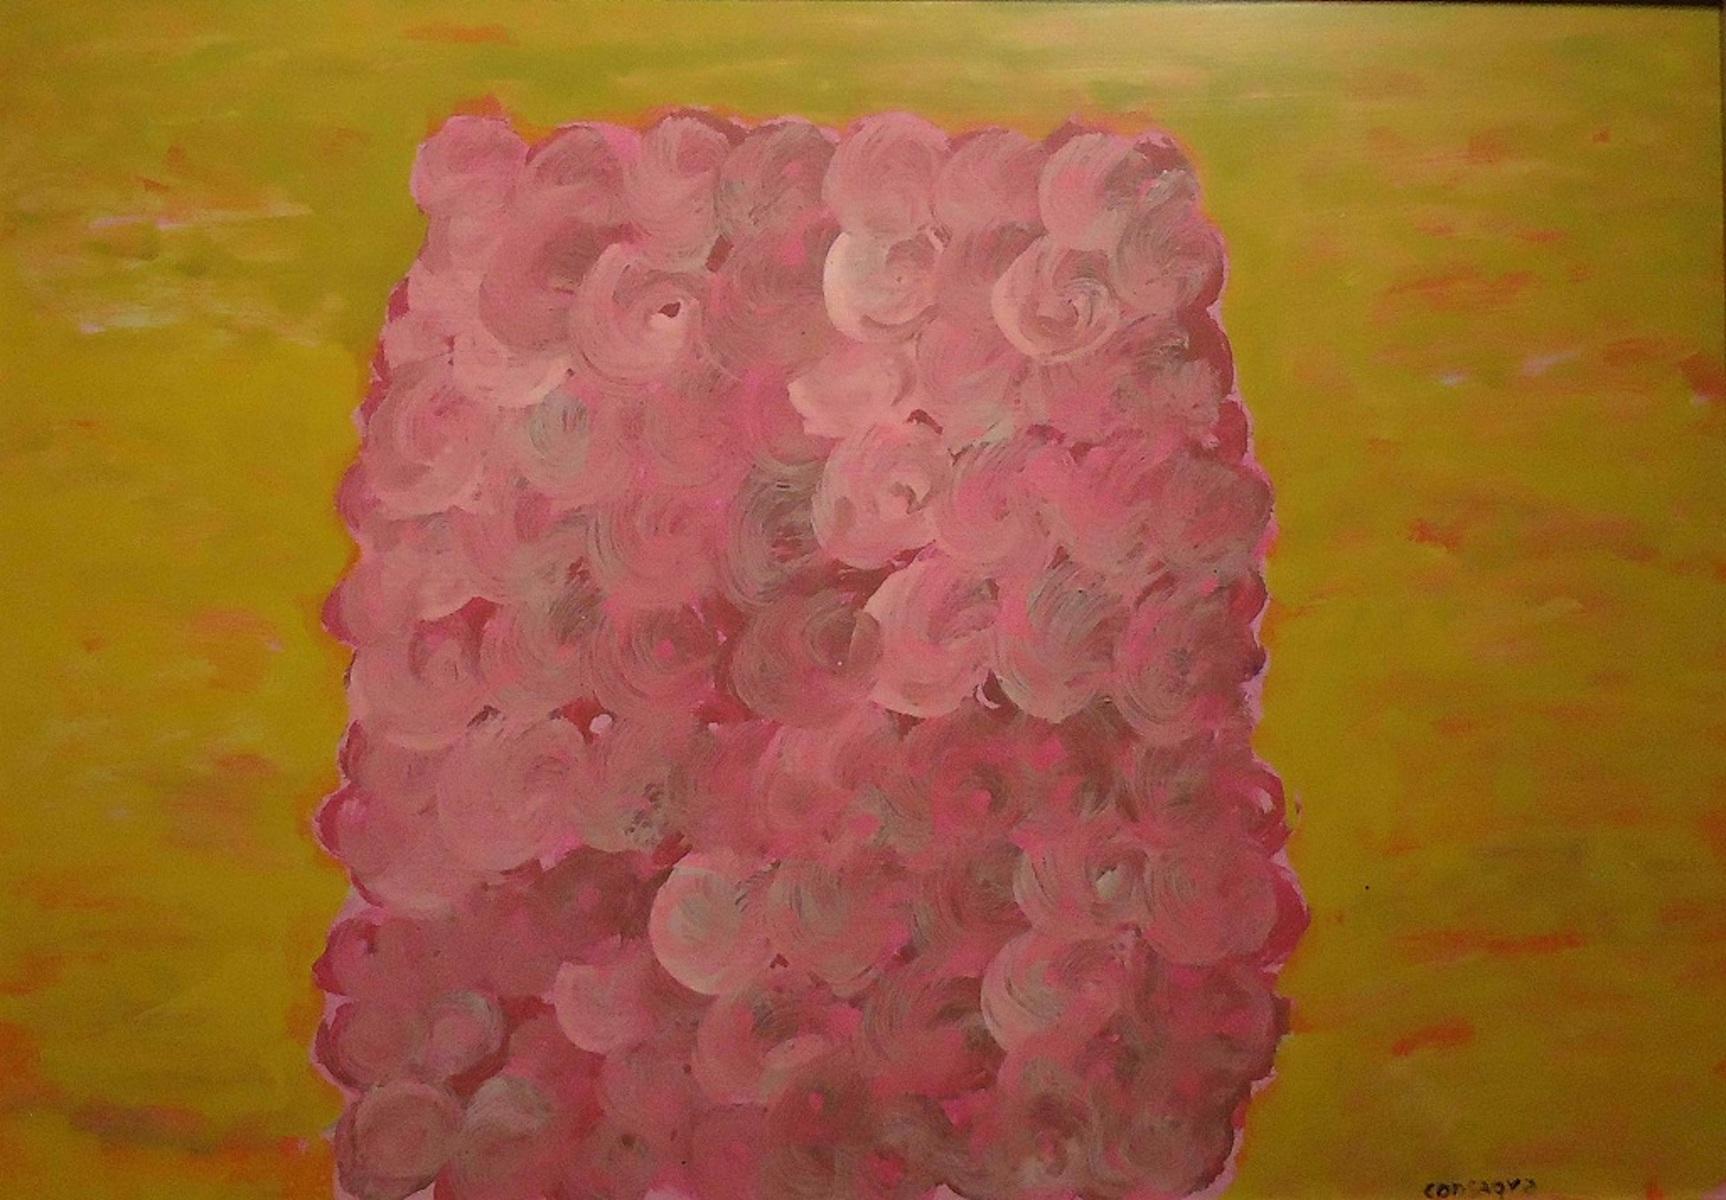 Abstract Print Pietro Consagra - Composition rose et jaune - Tempera de P. Consagra - 1973